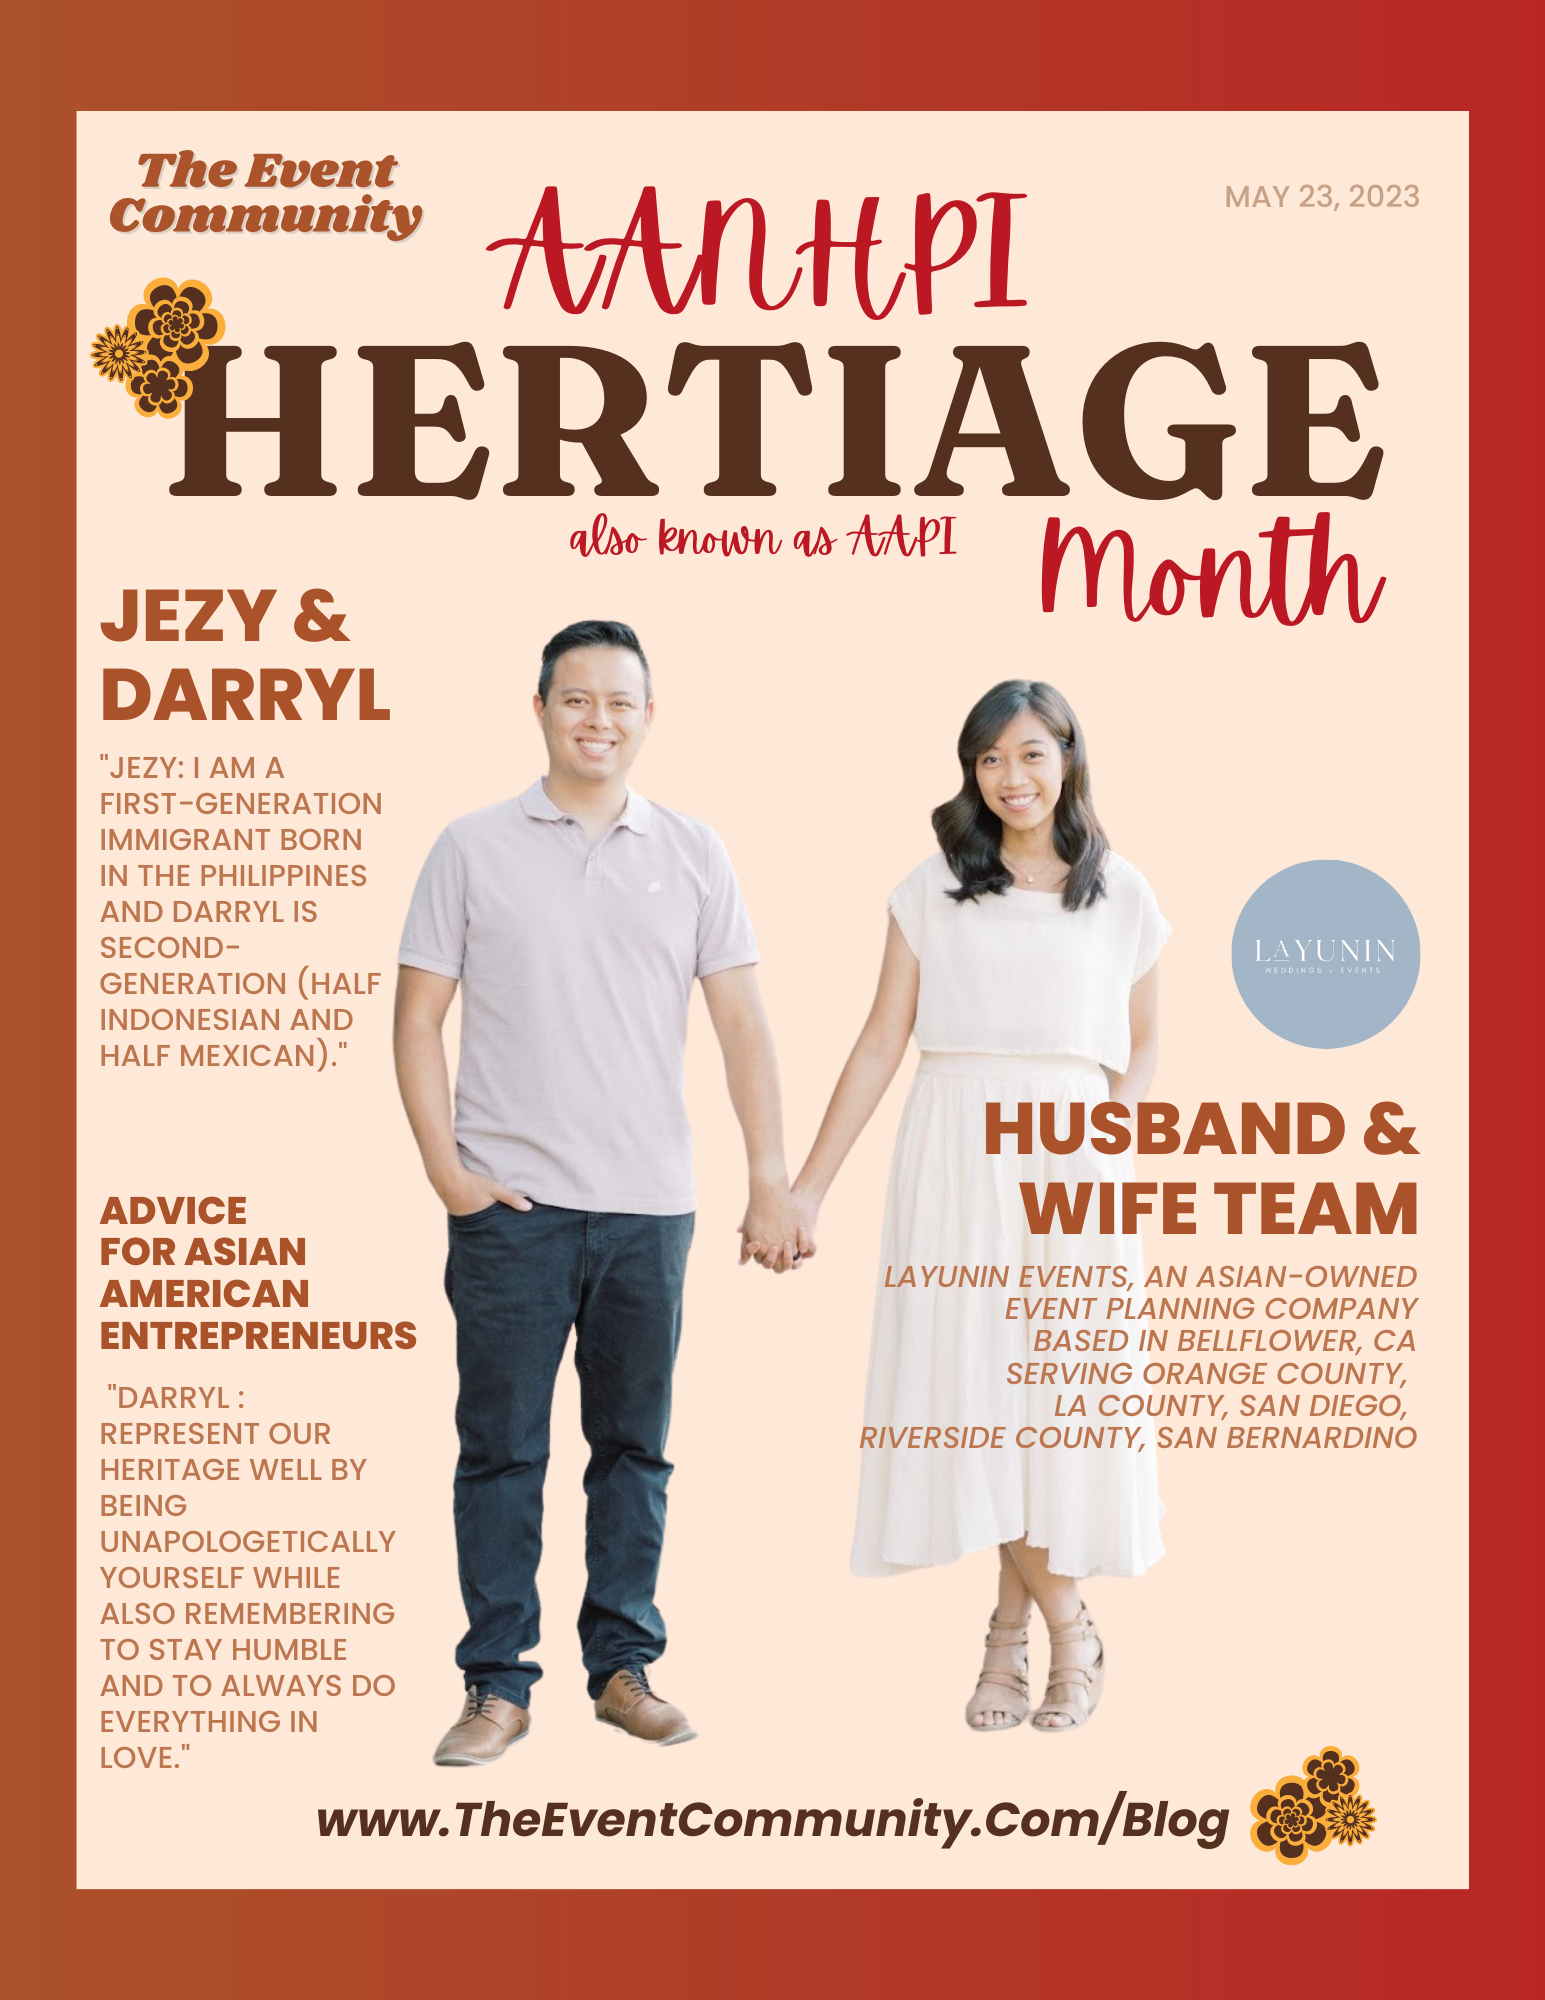 AANHPI Heritage Month: Layunin Events